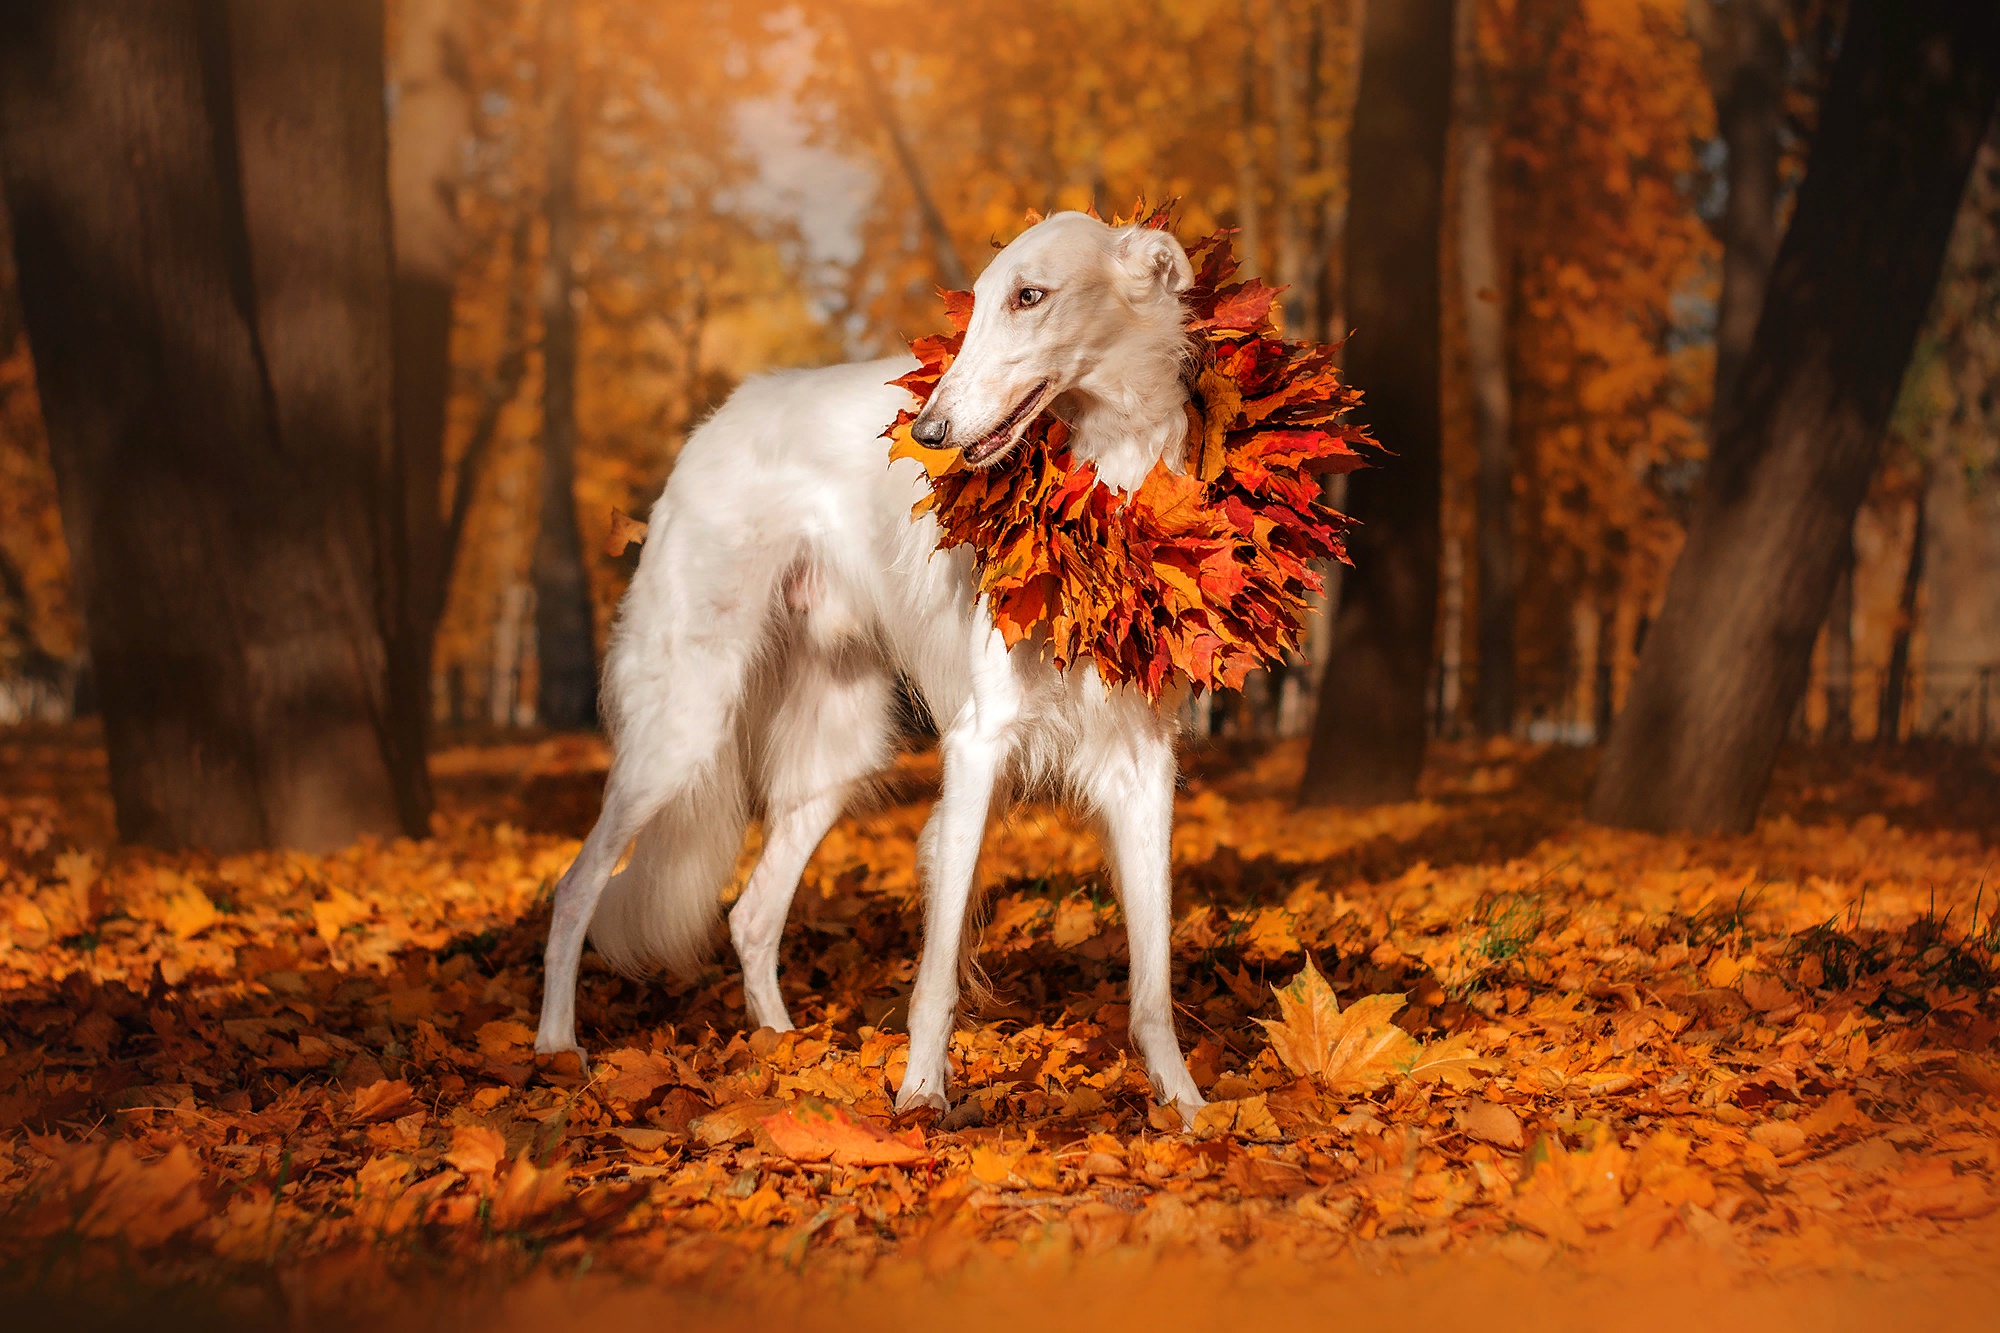 фото красивой природы осень и животных